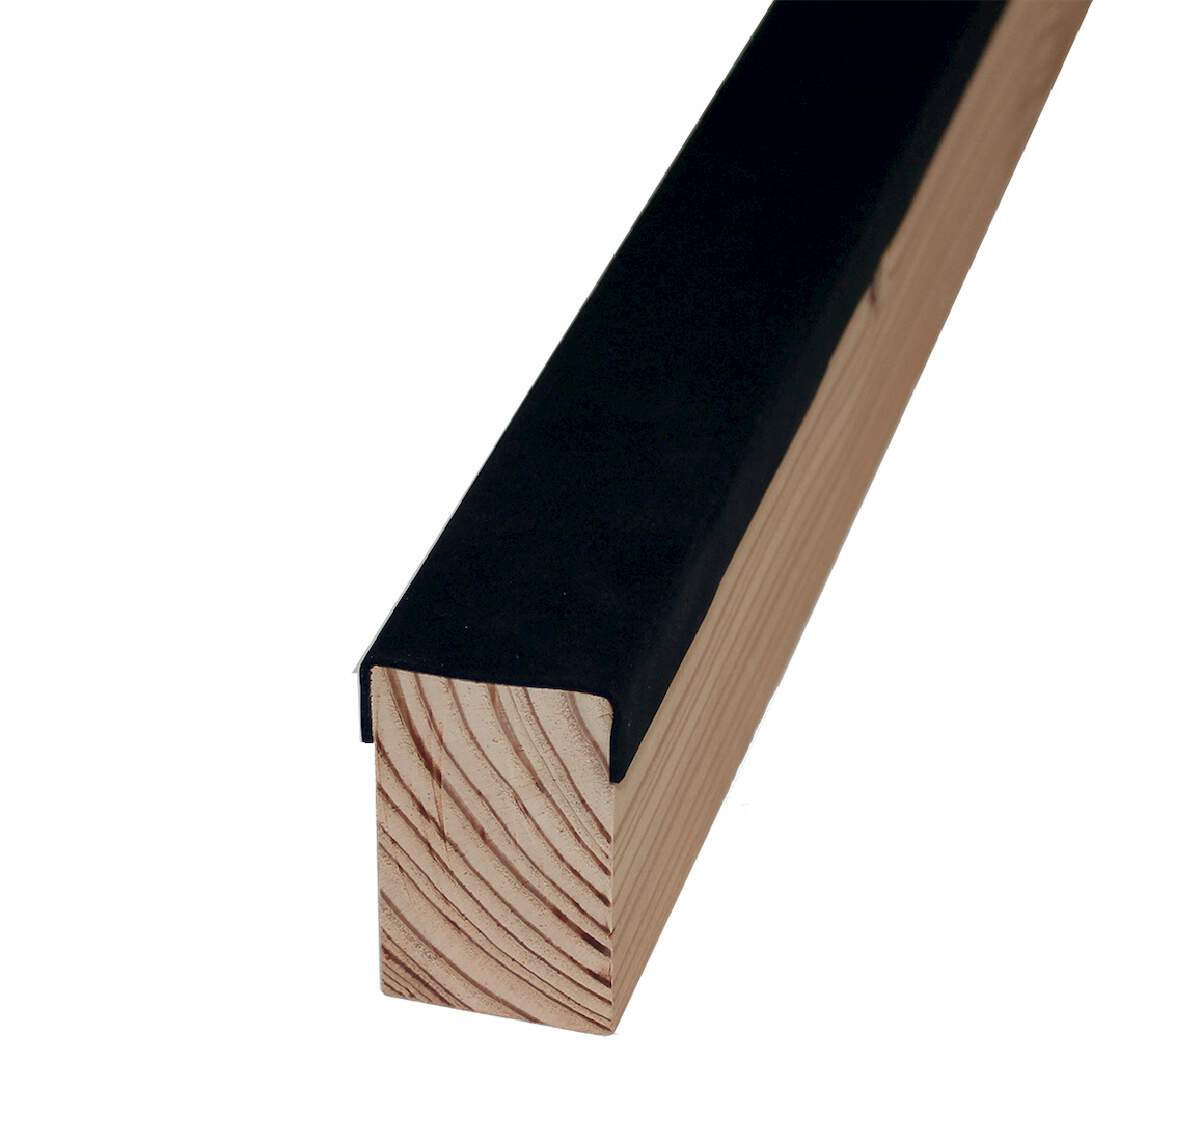 1250342 - Schutzband LxB 20mx80mm für Holzunterkonstruktionen